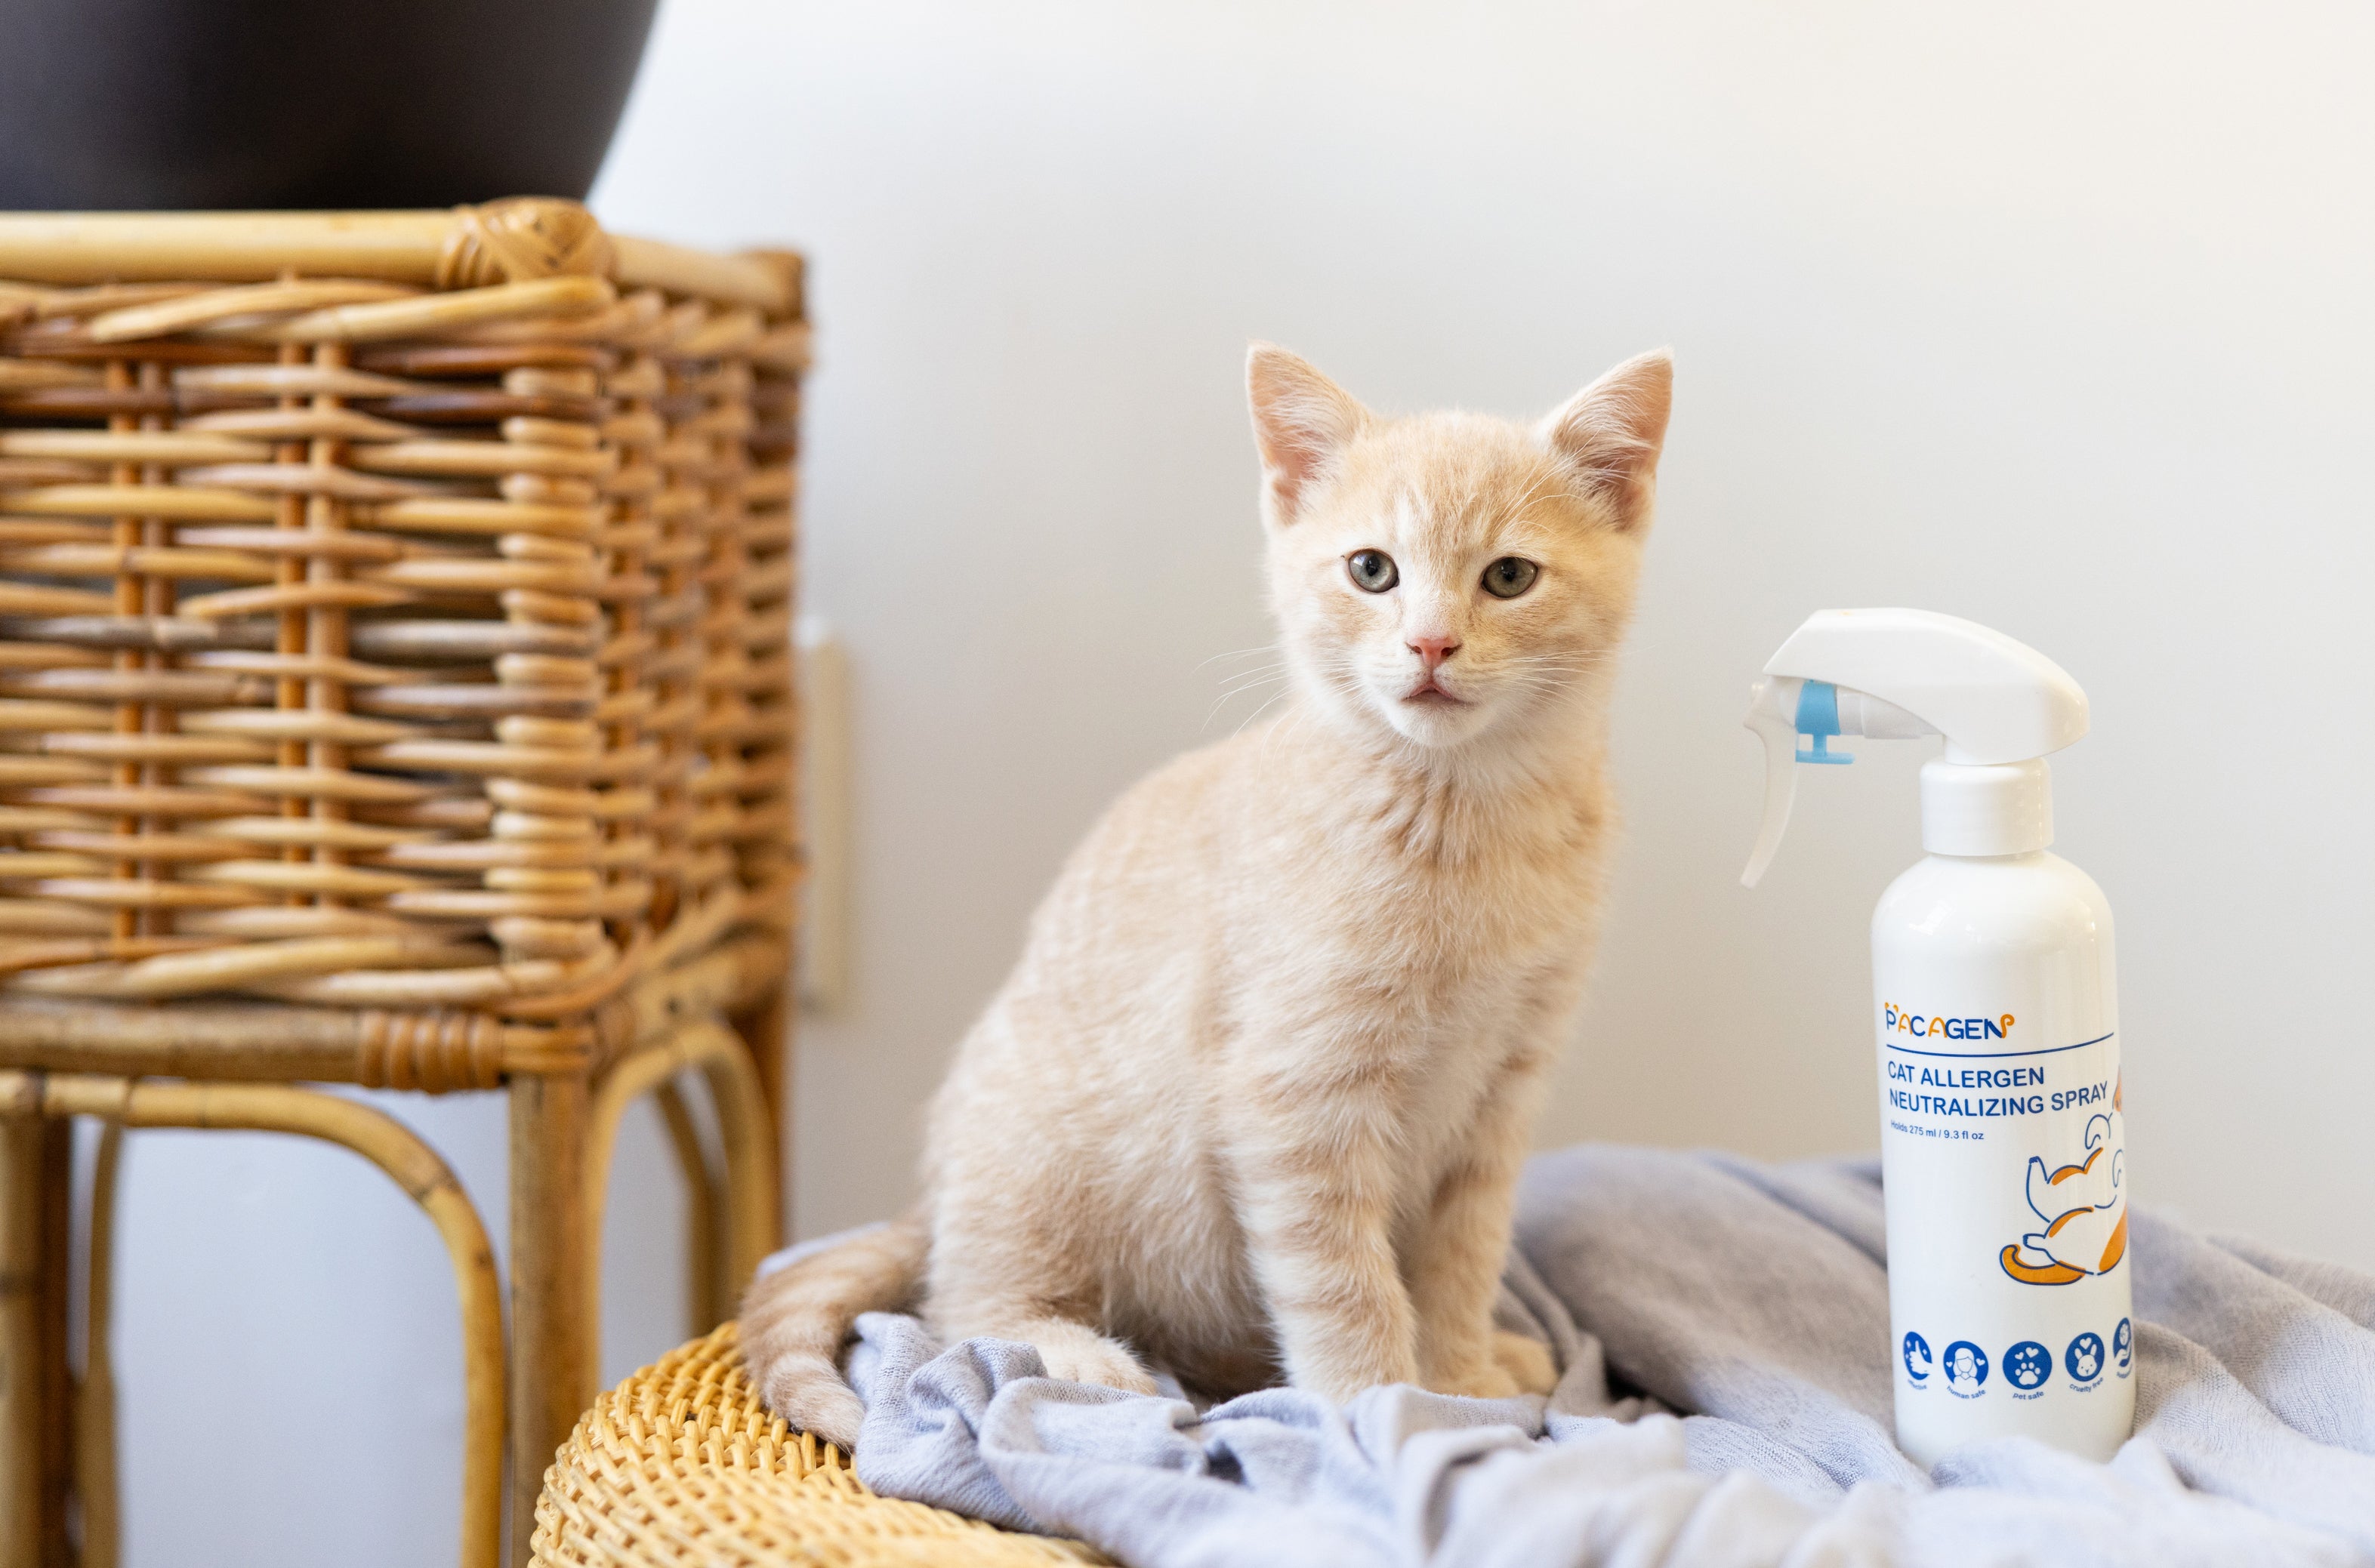 Kitten with Pacagen's Cat Allergen Neutralizing Spray